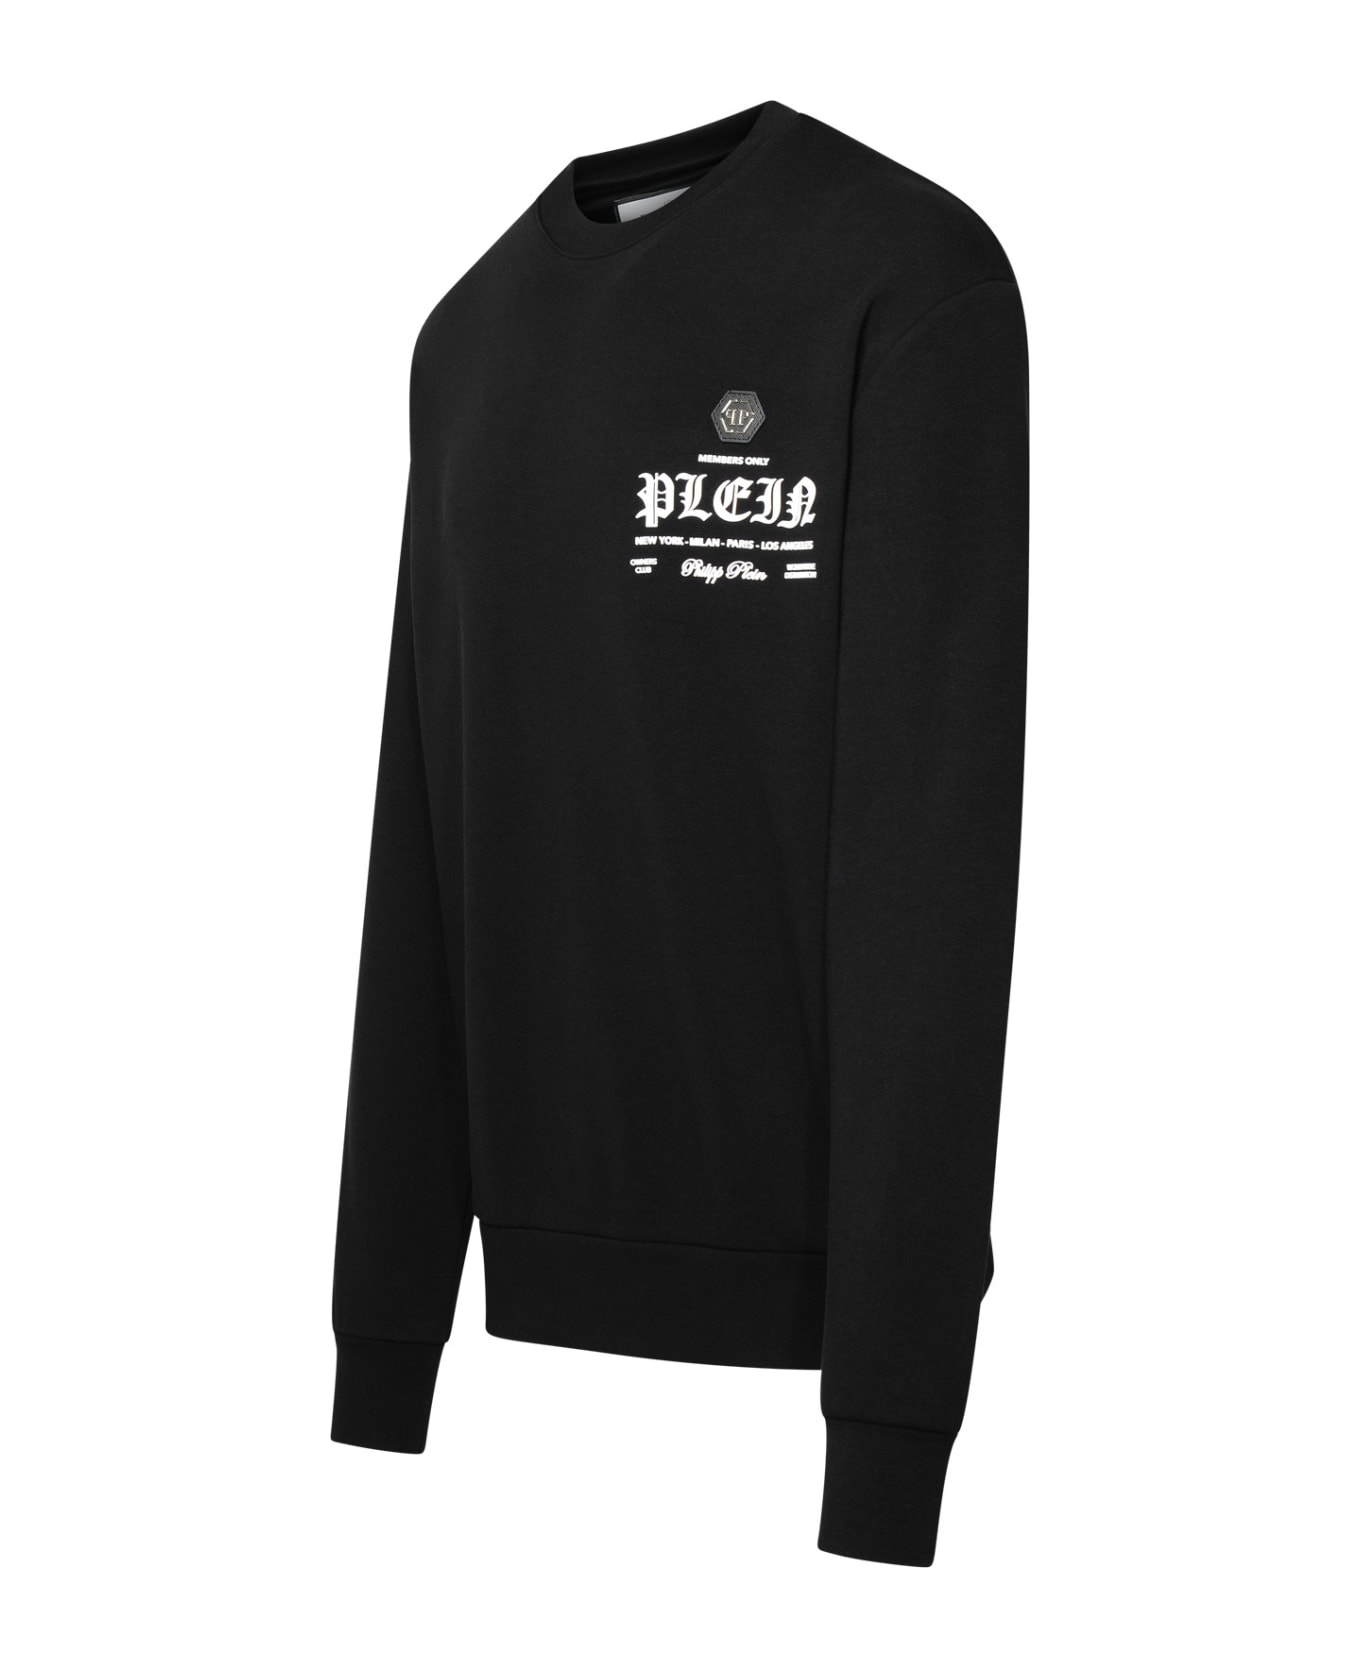 Philipp Plein Black Cotton Blend Sweatshirt - Black